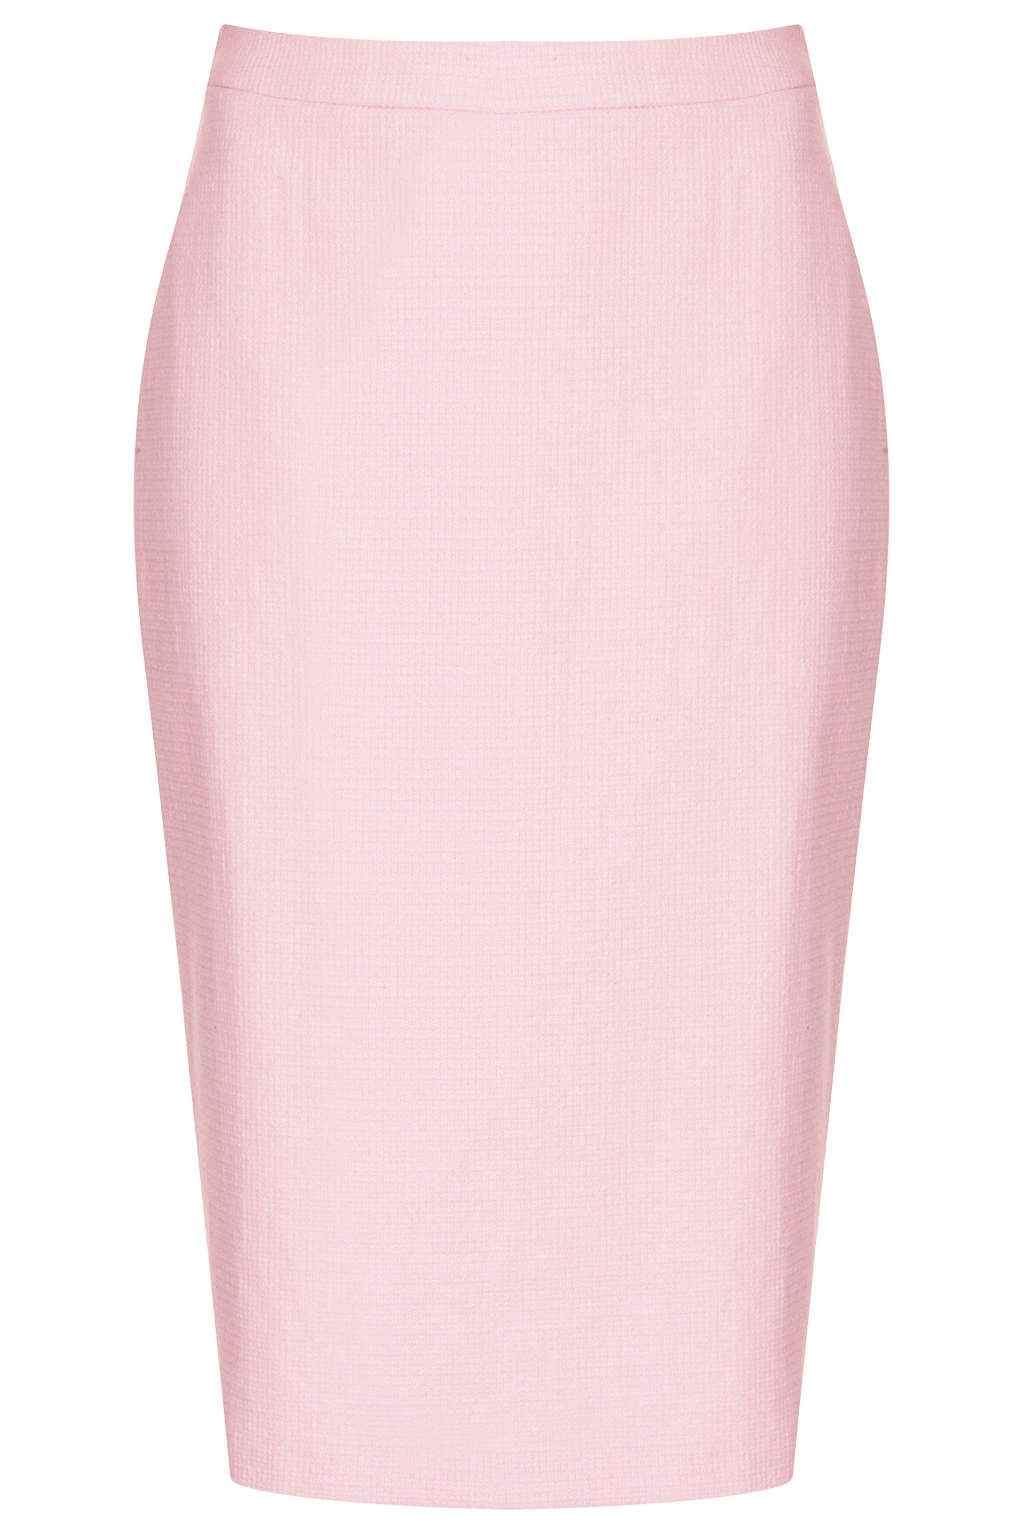 Lyst - Topshop Pink Tweed Pencil Skirt in Pink